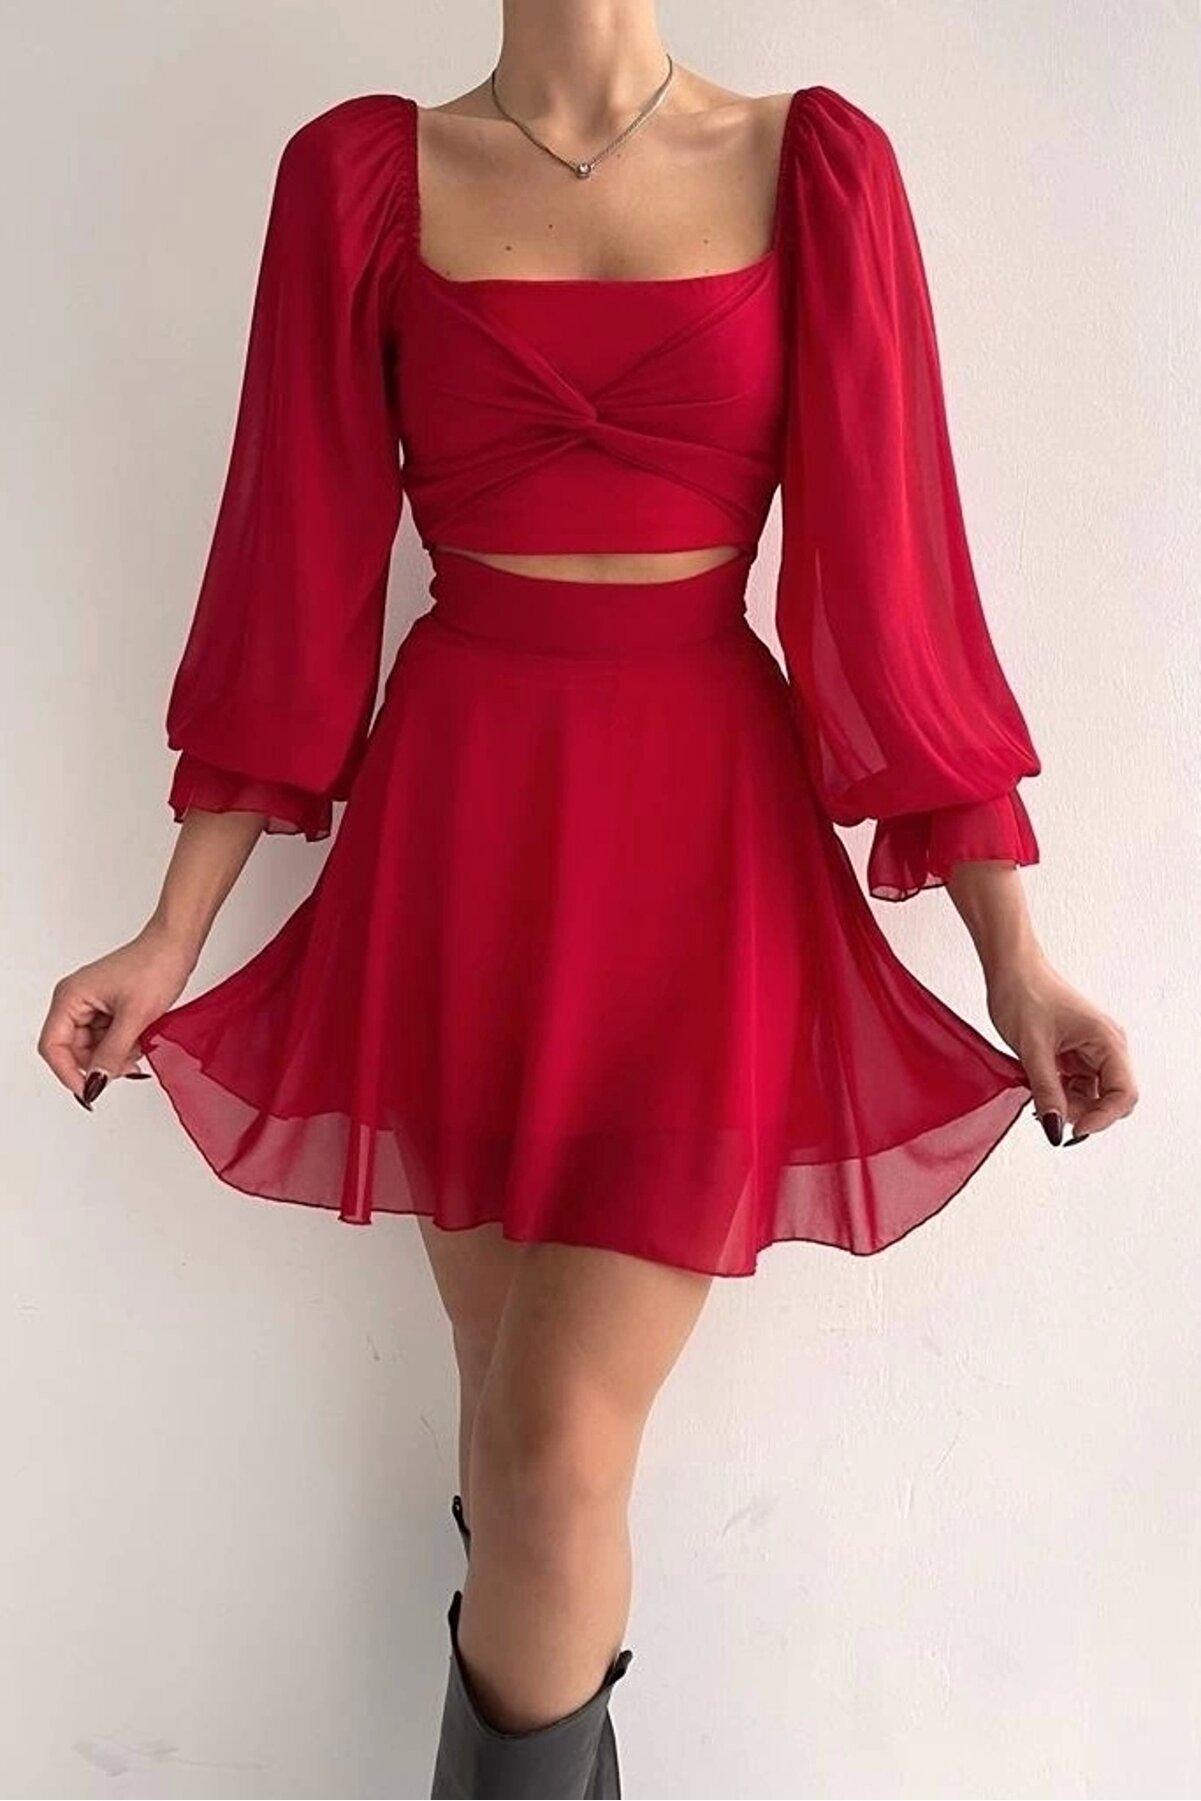 Eka Kadın Kırmızı Bel Detaylı Tül Elbise 0990-212045